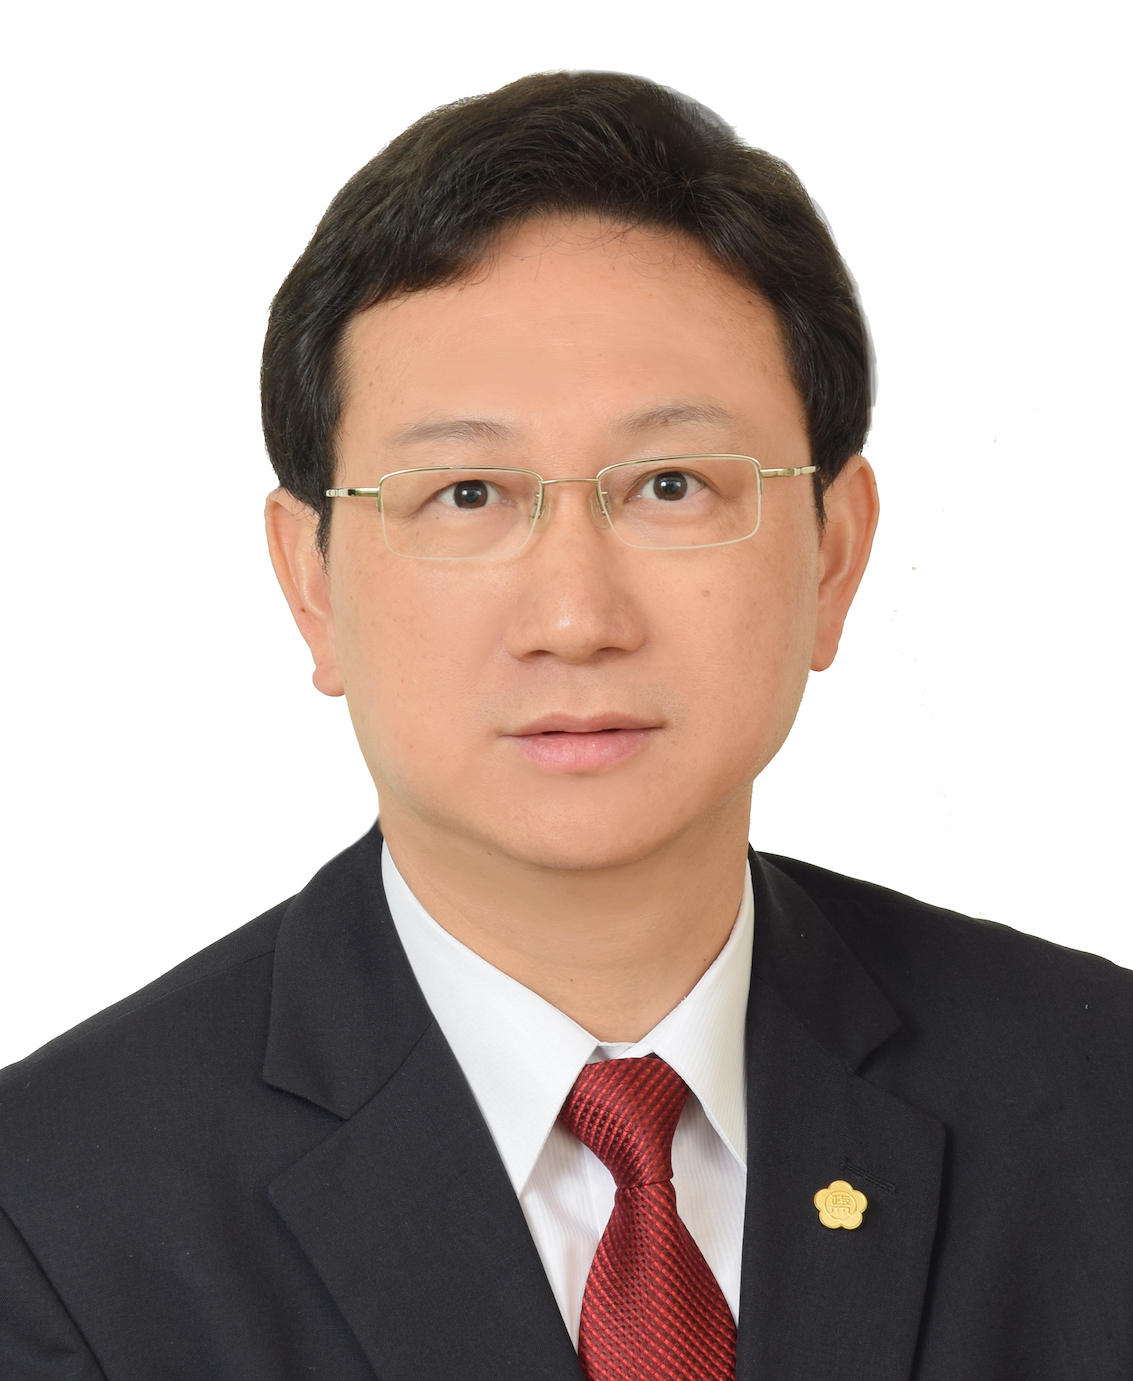  Amb. CHEN-YUAN TUNG, Ph.D.